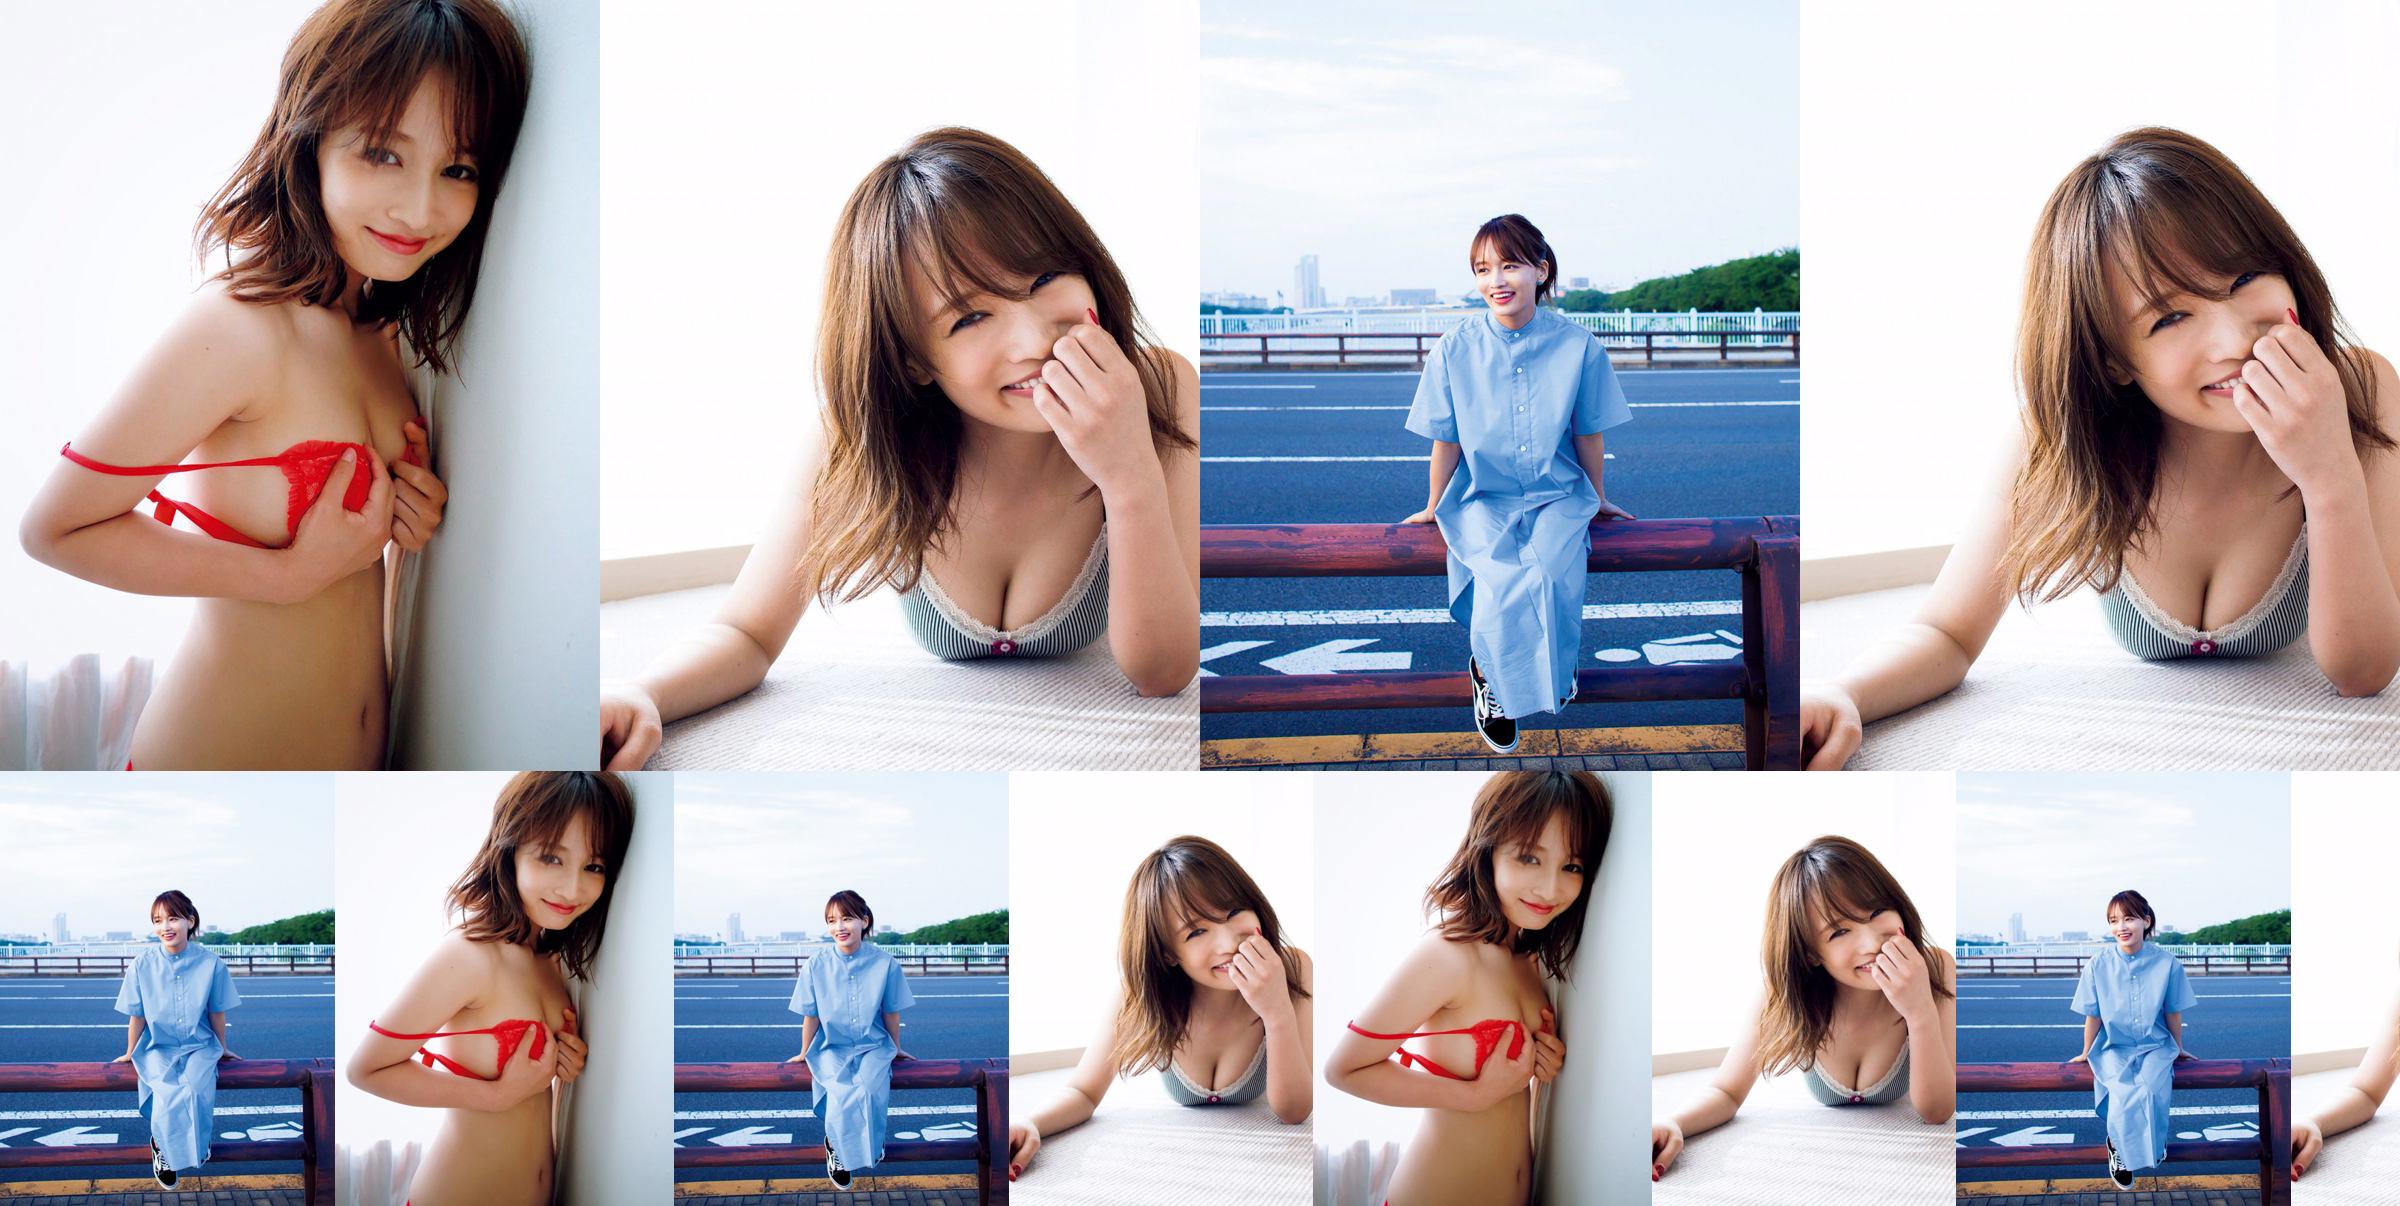 [ПЯТНИЦА] Mai Watanabe "Чубок F с тонким телом" фото No.9af52a Страница 2